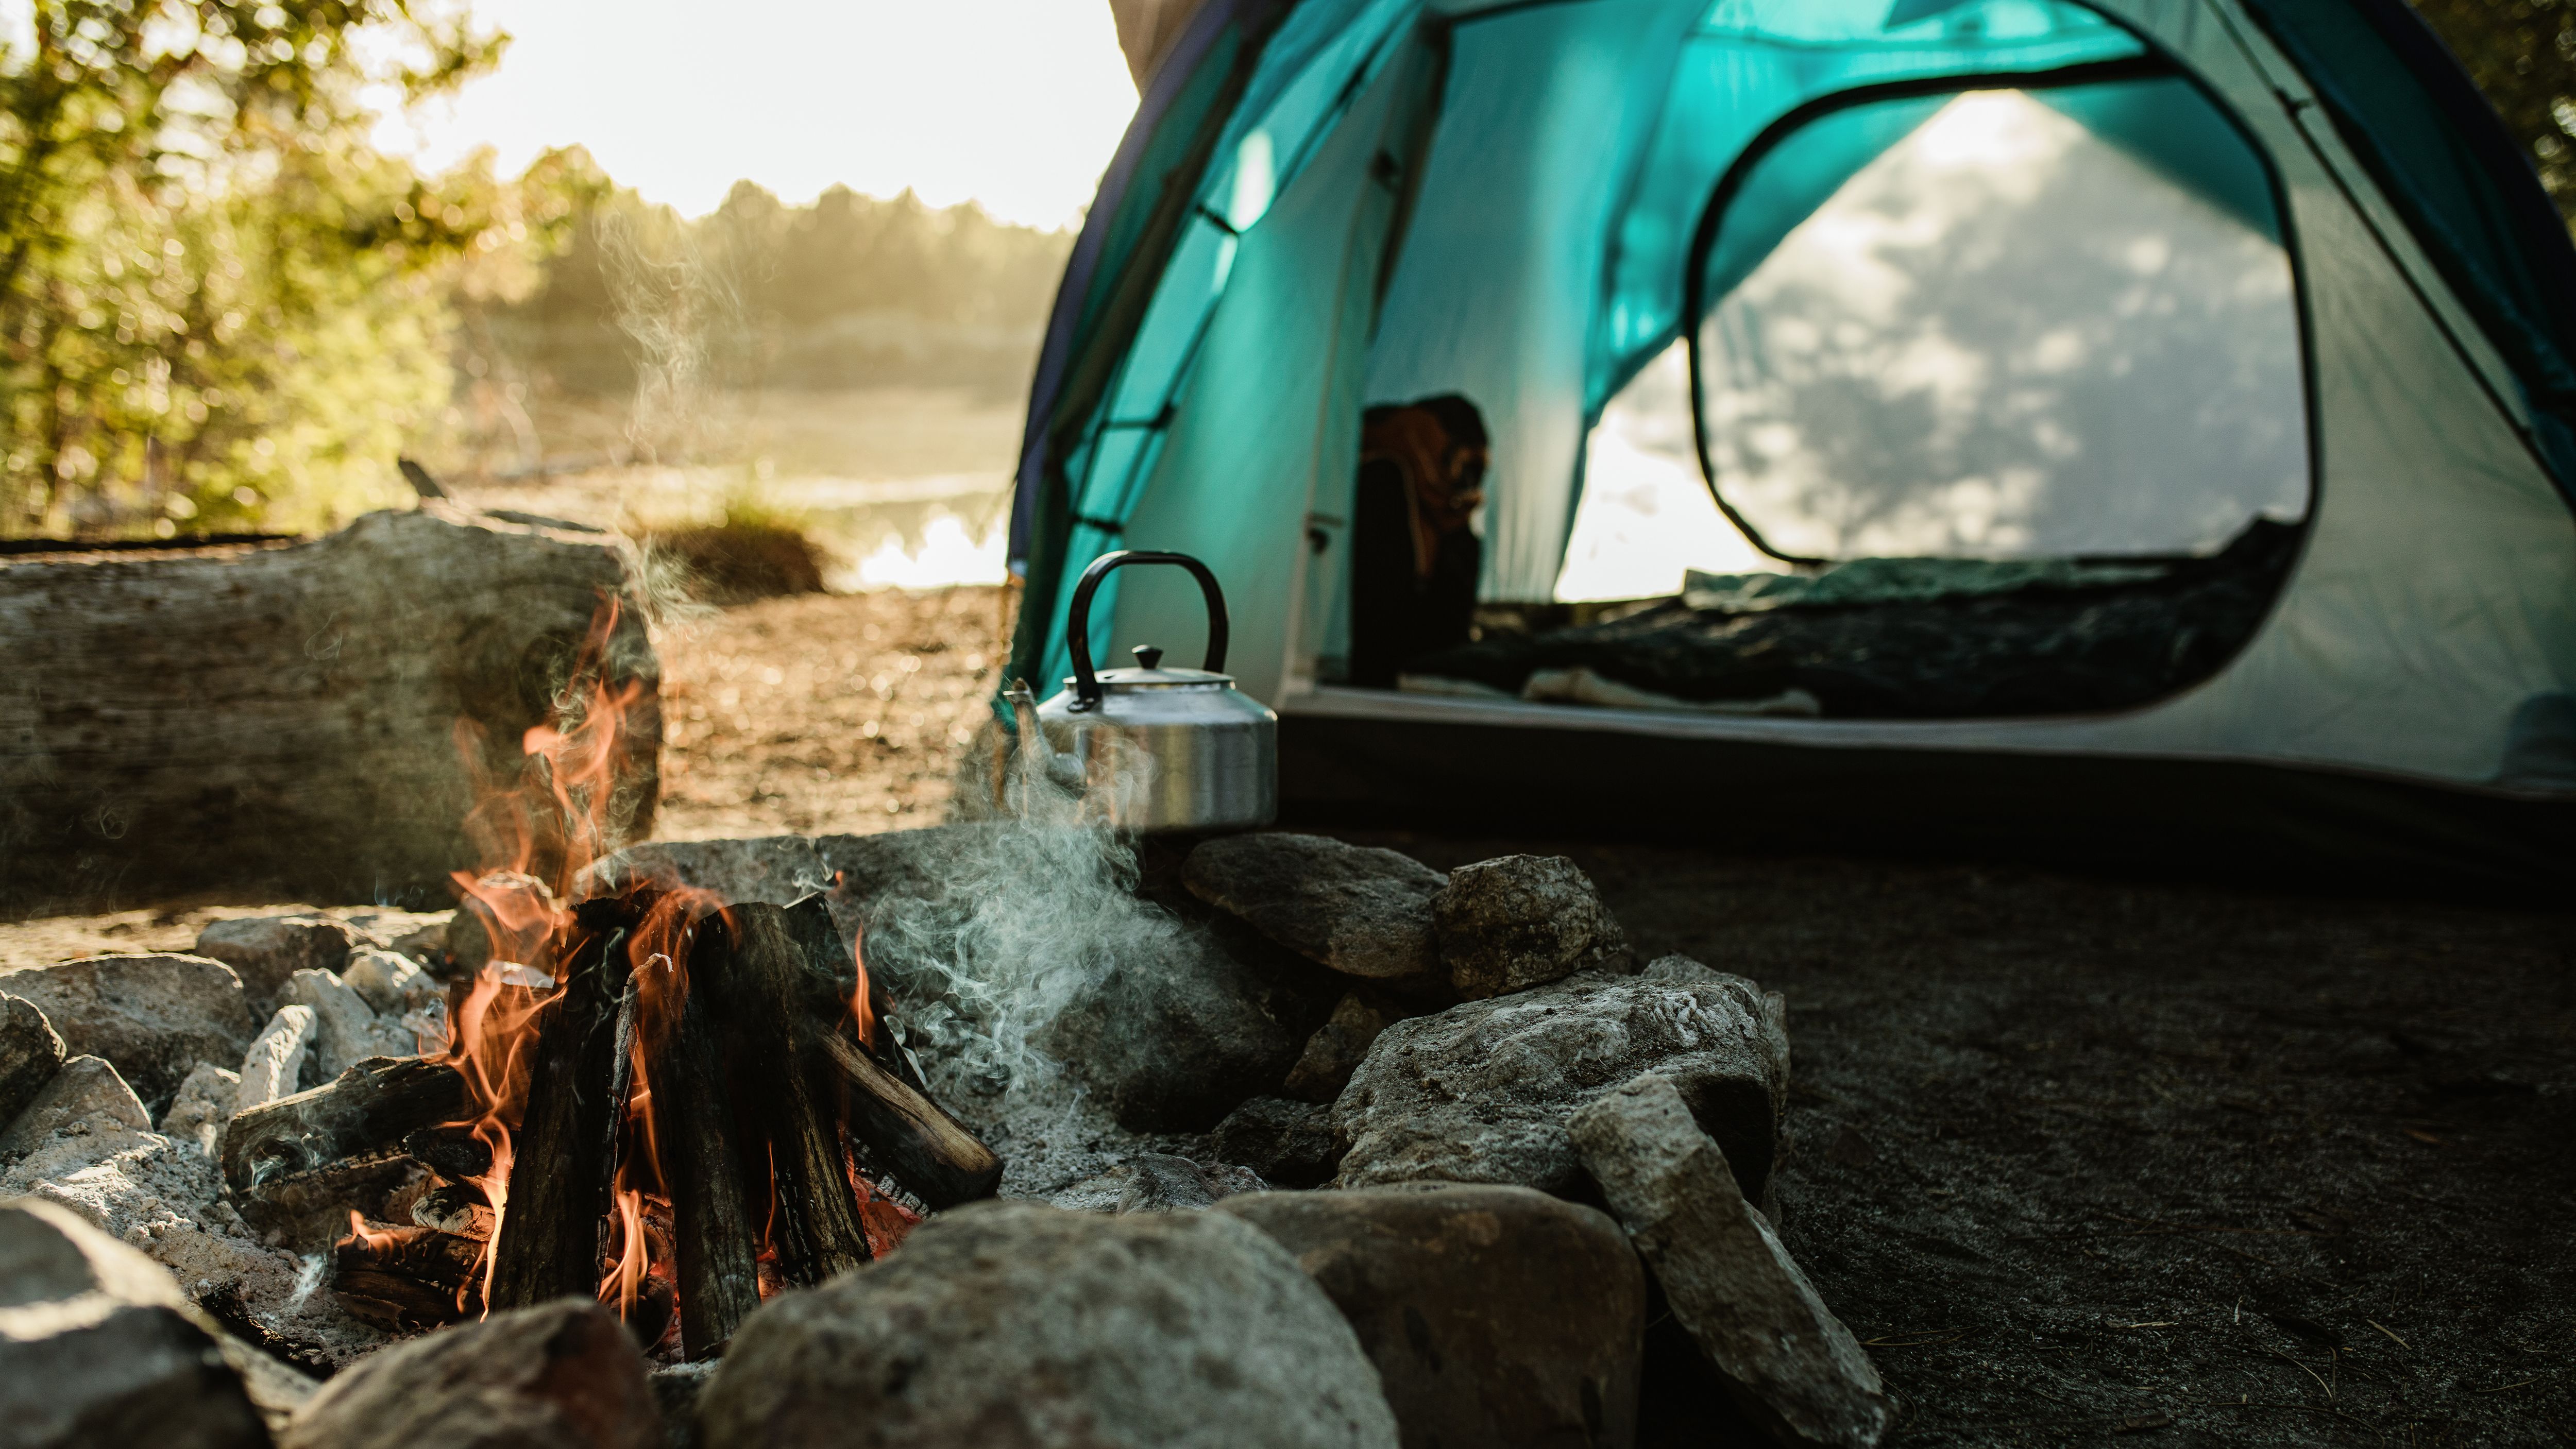 Ik zie je morgen Wie creatief The camping checklist every family needs in 2023 | CNN Underscored